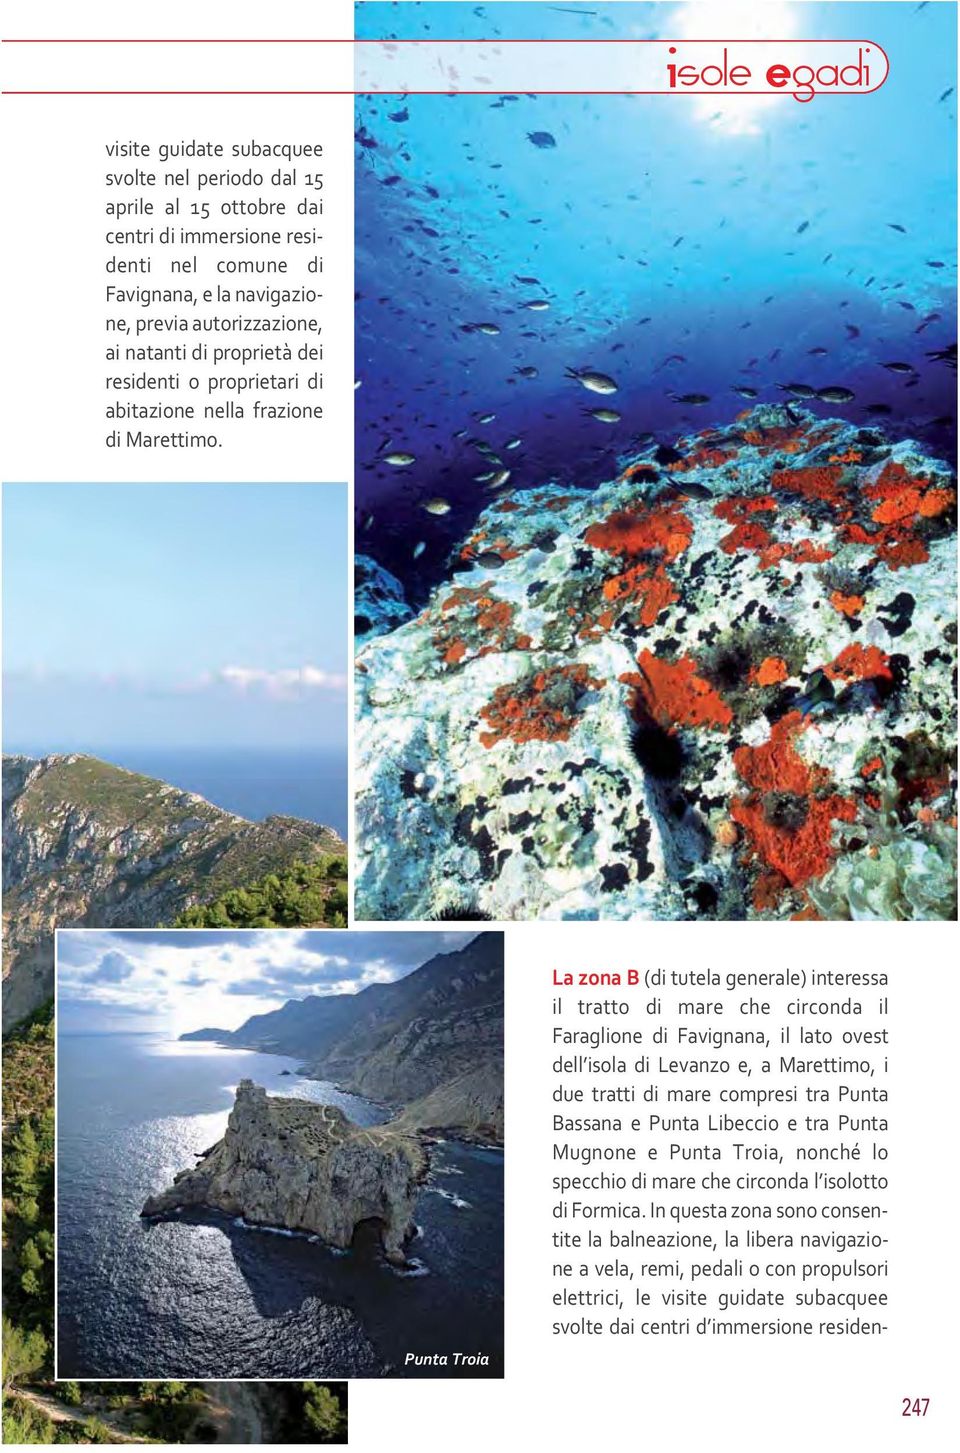 Punta Troia La zona B (di tutela generale) interessa il tratto di mare che circonda il Faraglione di Favignana, il lato ovest dell isola di Levanzo e, a Marettimo, i due tratti di mare compresi tra